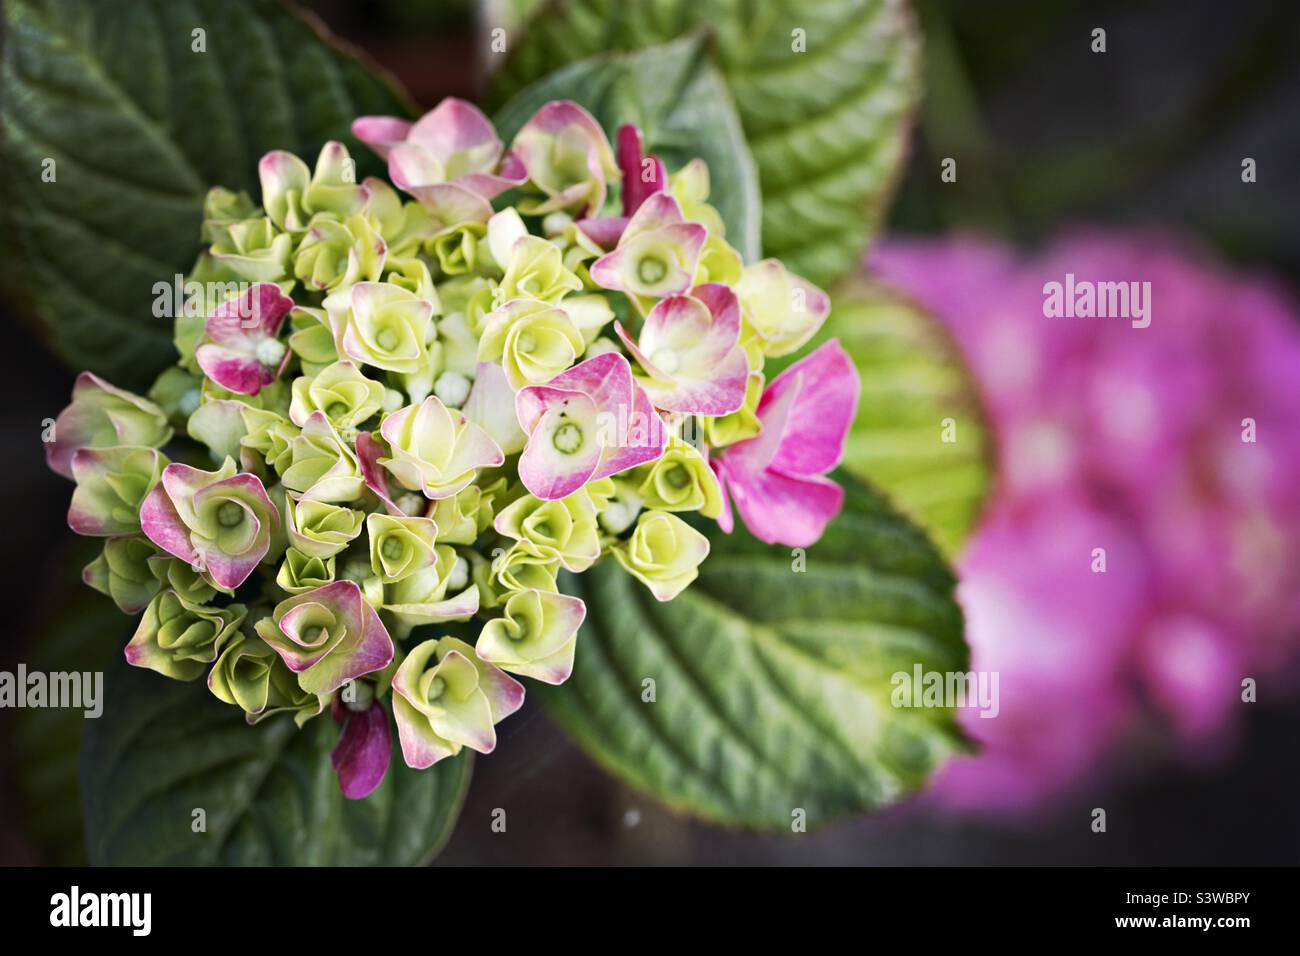 Hydrangea in flower in summer Stock Photo